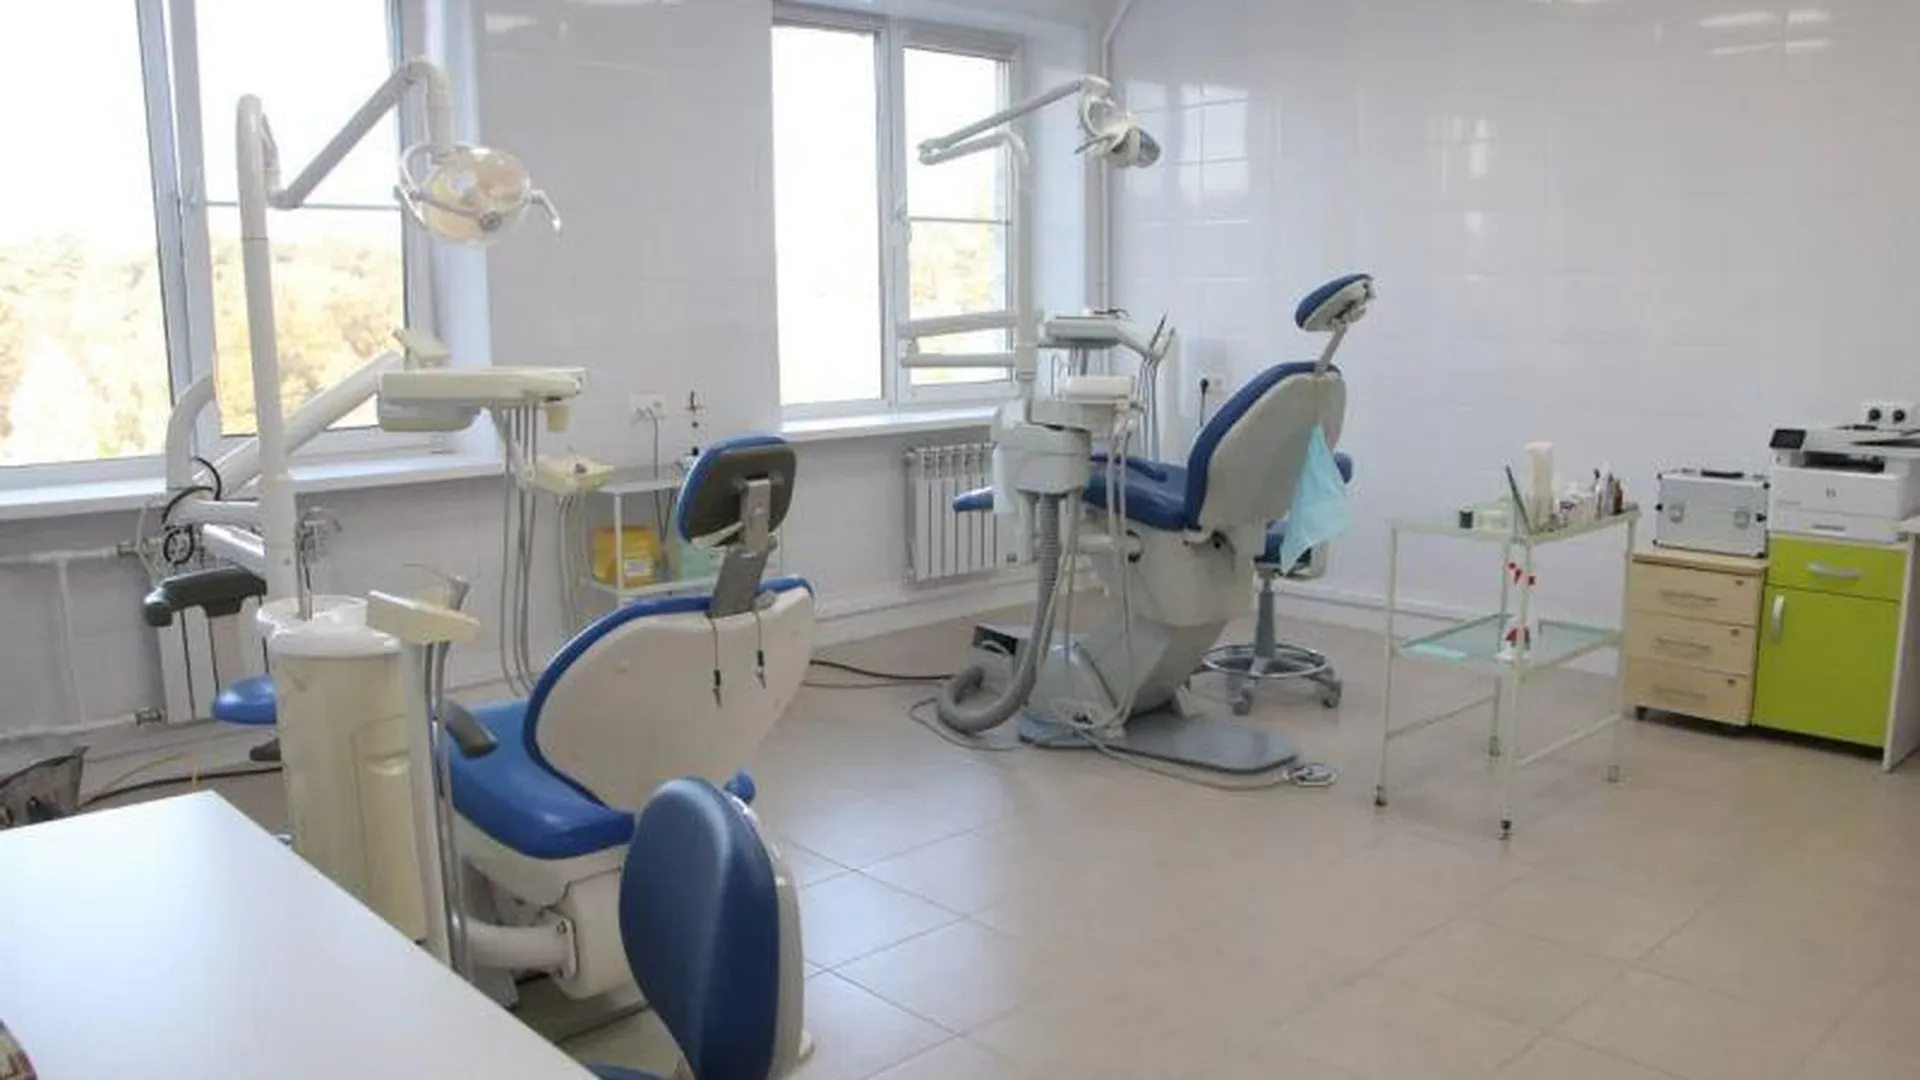 Поликлинику на 740 посещений в смену капитально отремонтировали в Протвино